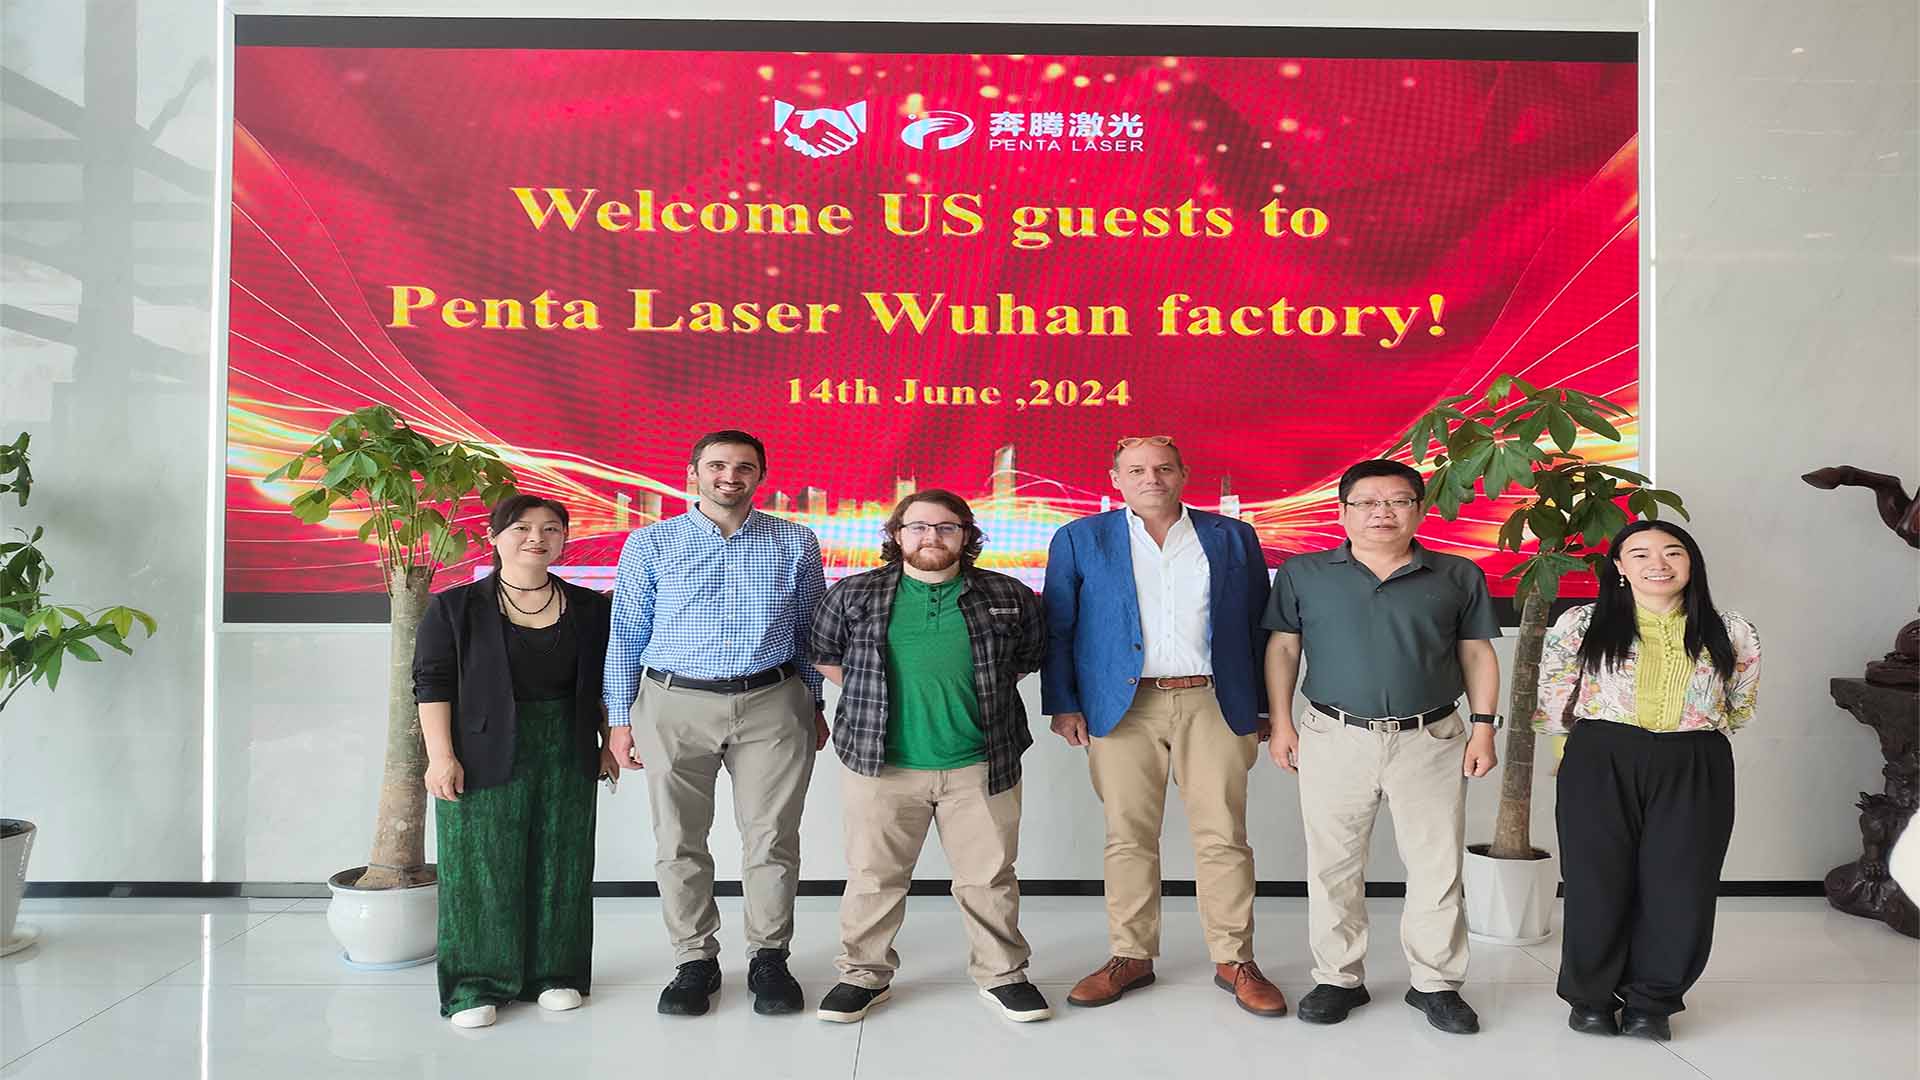 펜타레이저(Penta Laser)는 하이엔드 레이저 커팅 기술의 강점을 보여주기 위해 미국 고객을 다시 환영합니다.